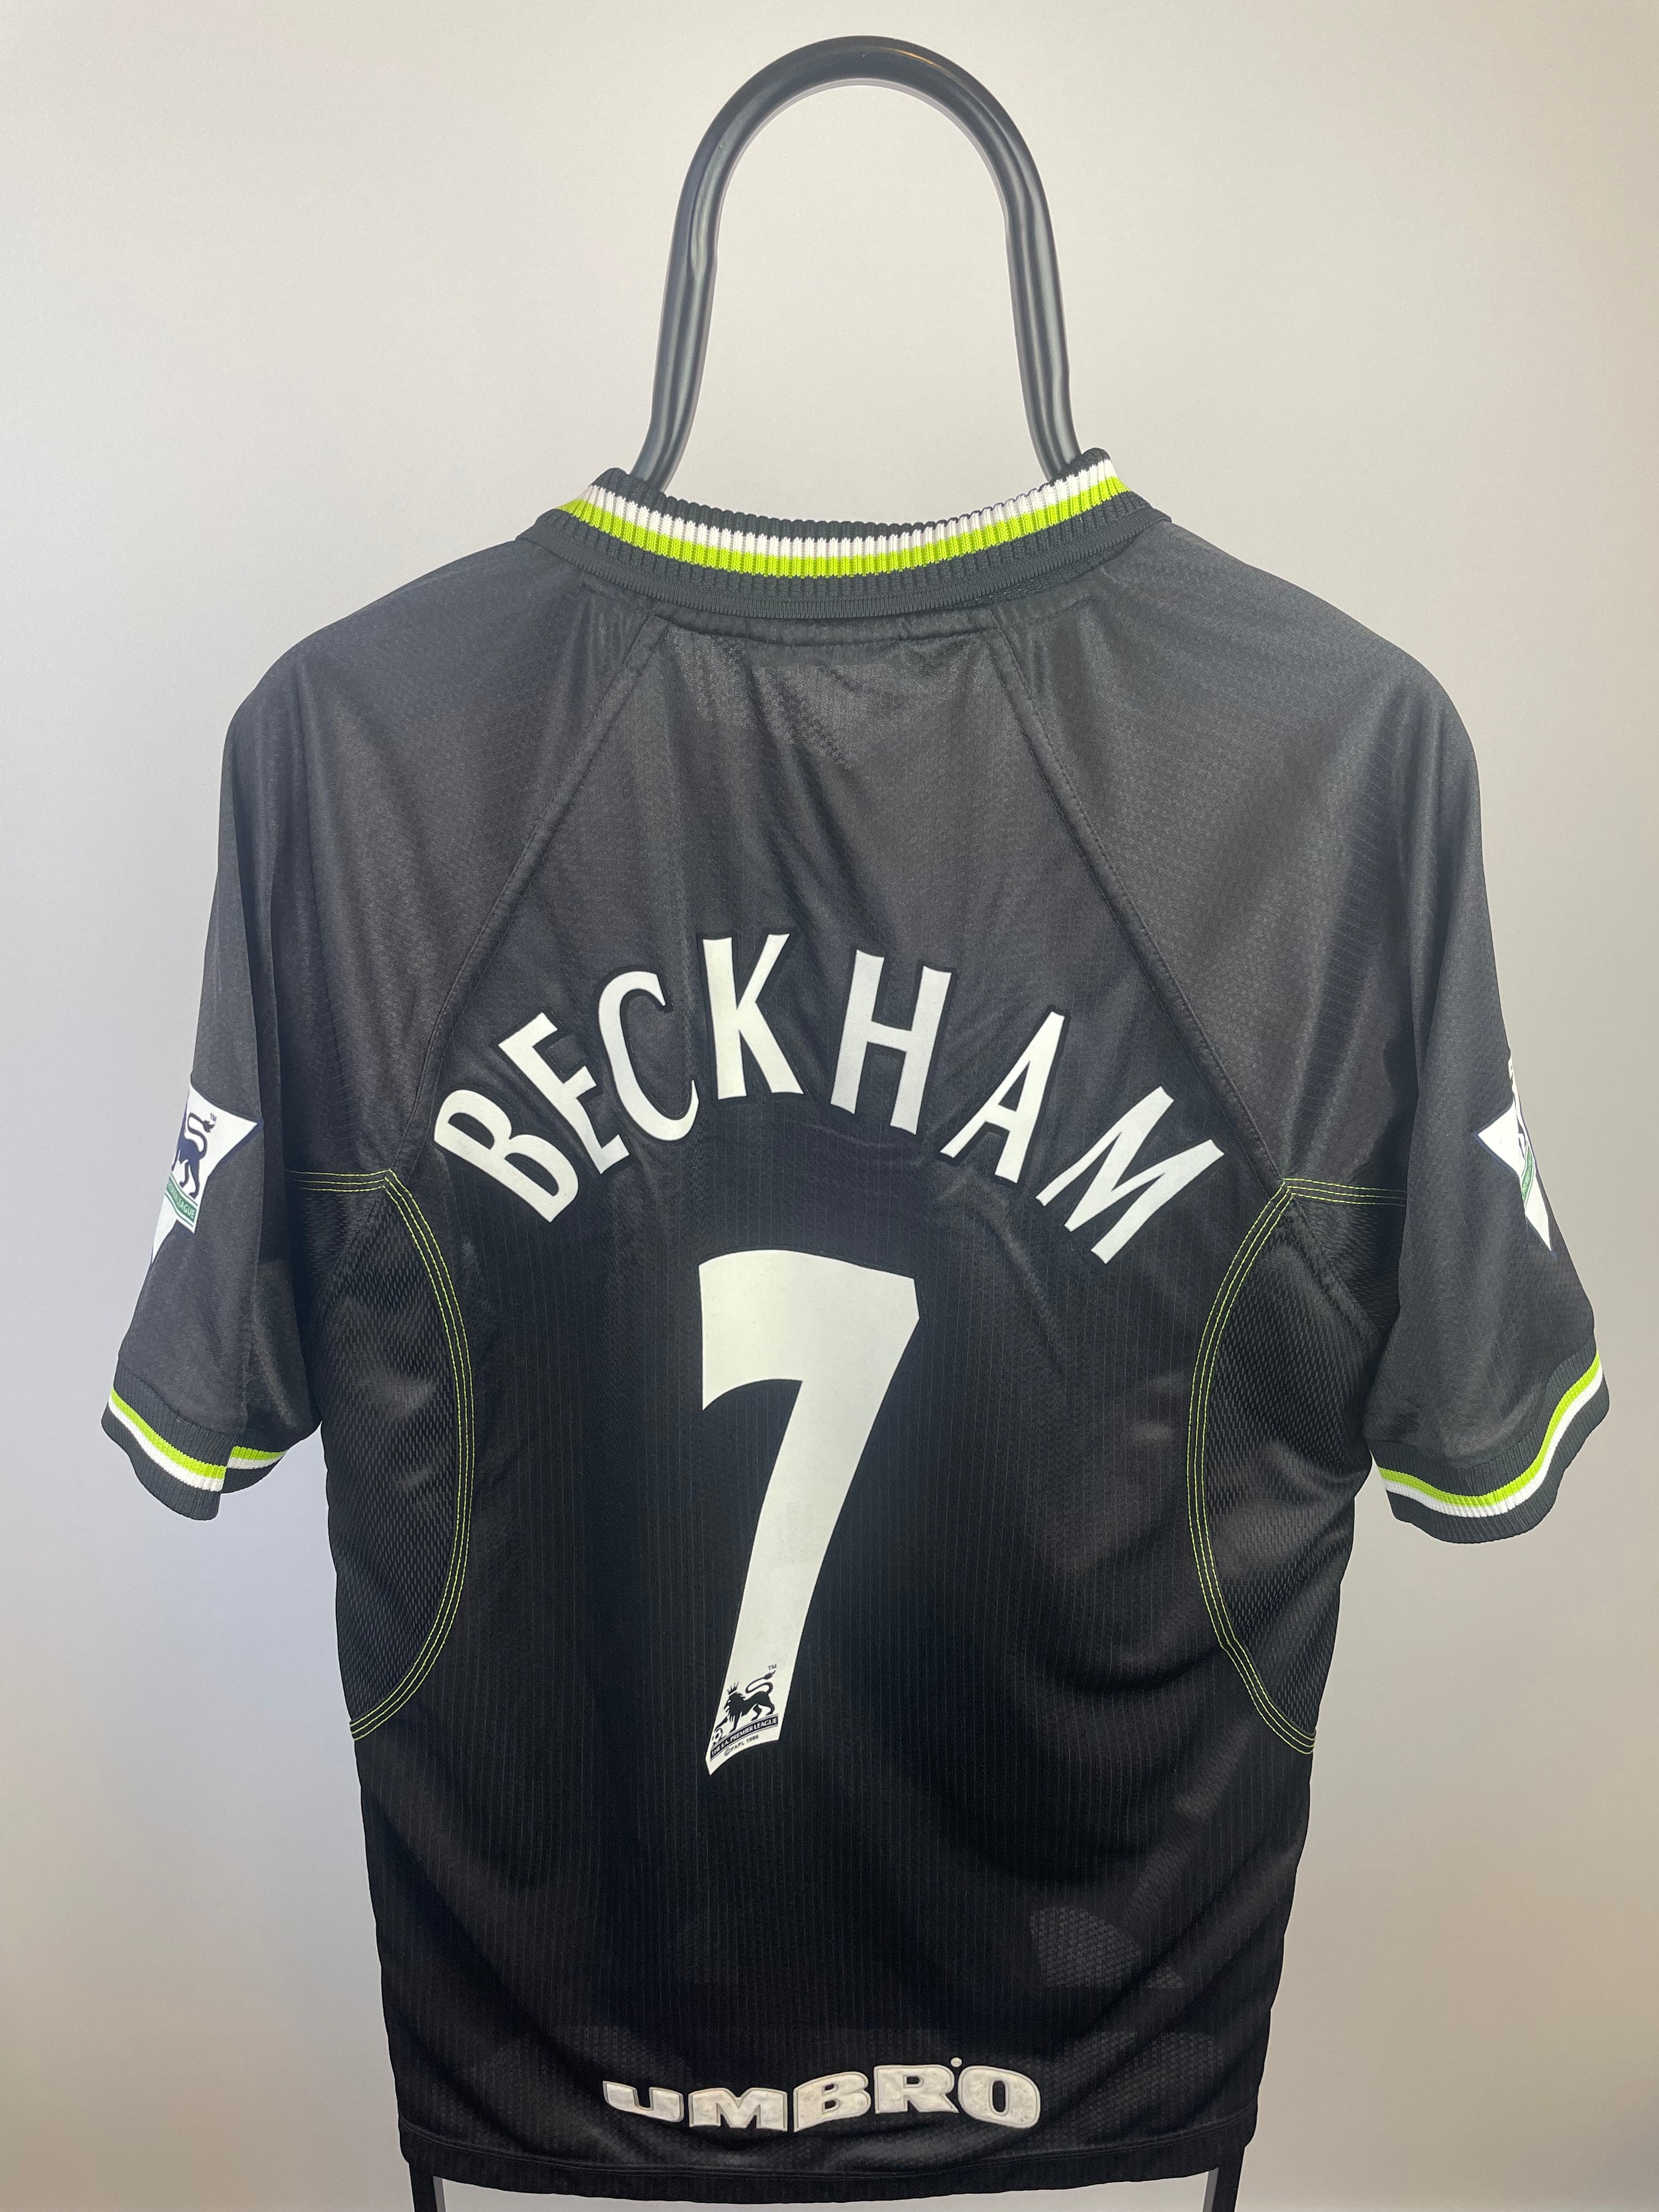 David Beckham Manchester United 98/99 3 trøje - L